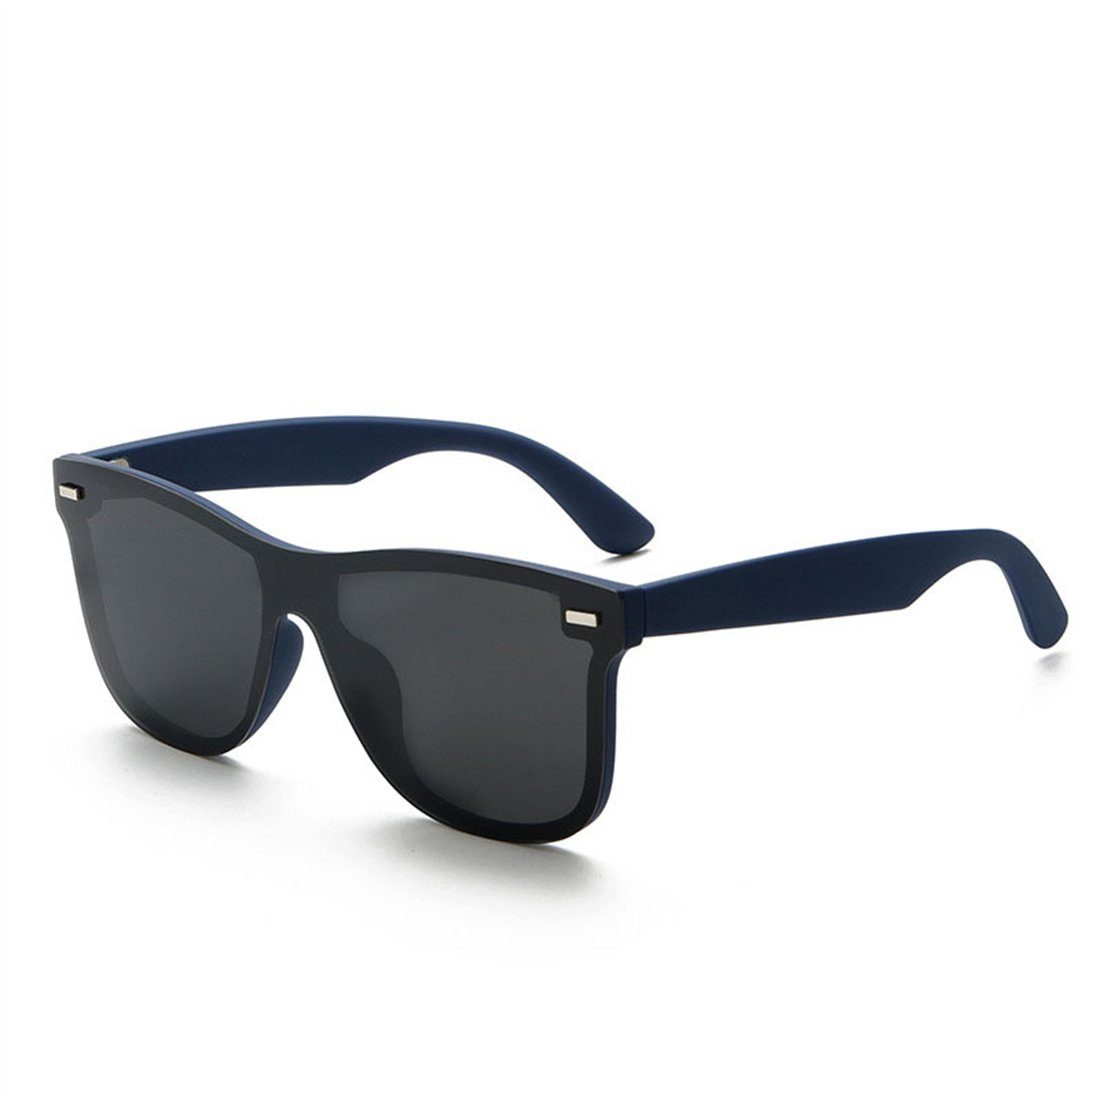 DÖRÖY Sonnenbrille Polarisierende Retro-Sonnenbrille für Männer, Outdoor-Sonnenbrille C